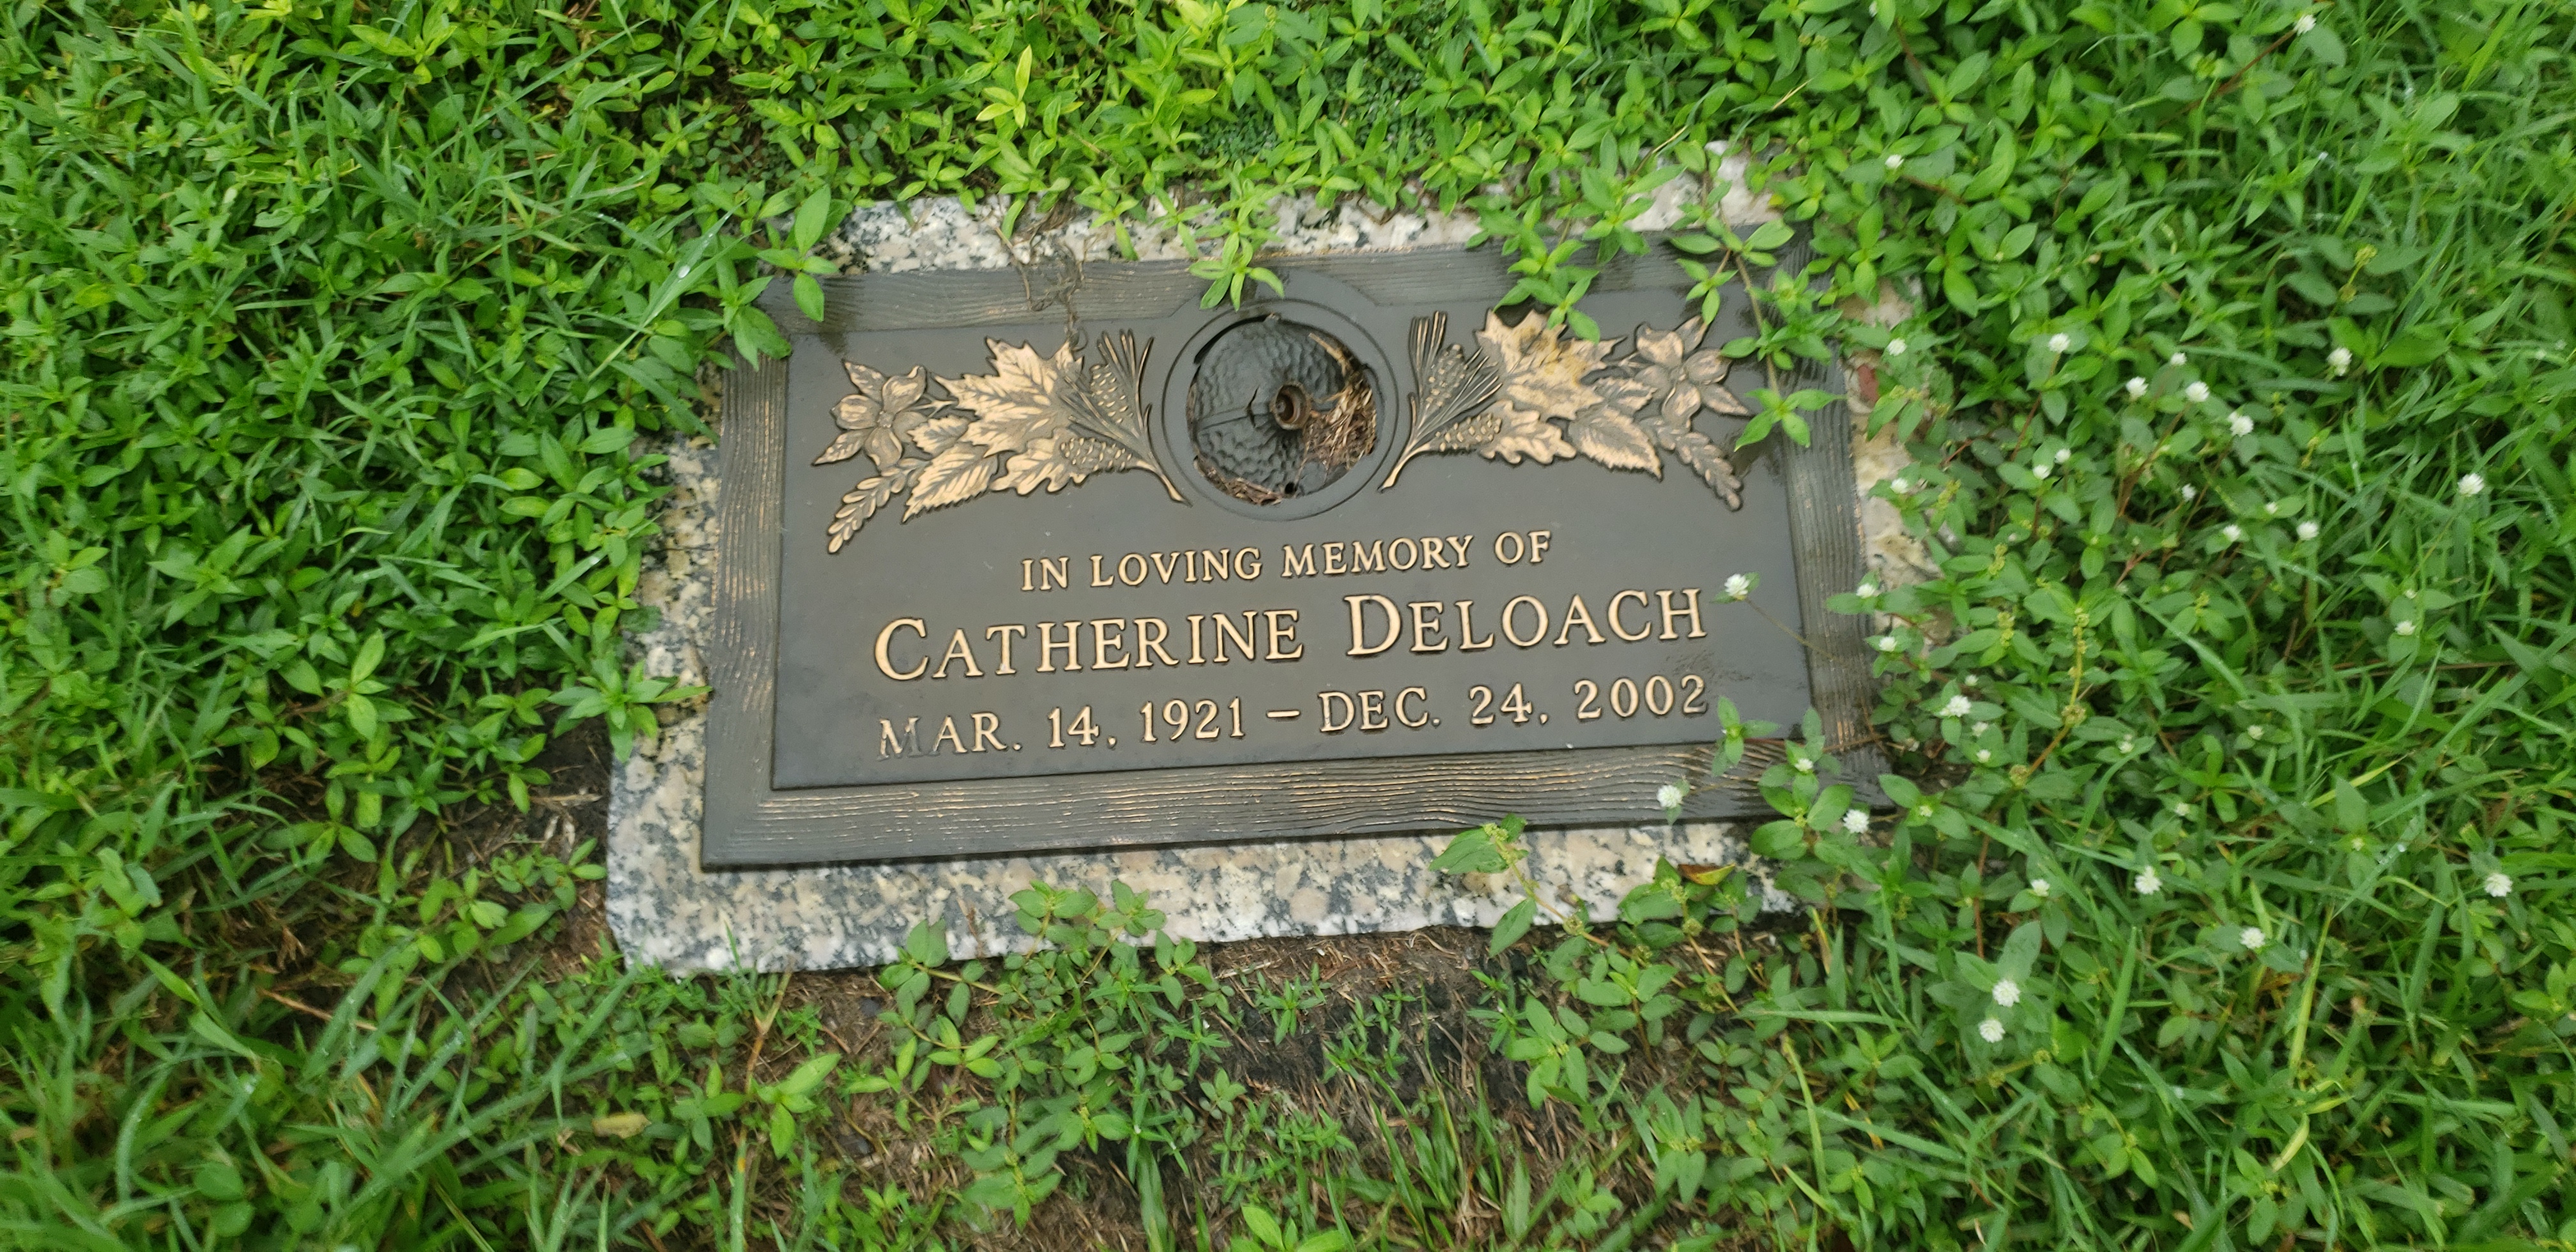 Catherine Deloach